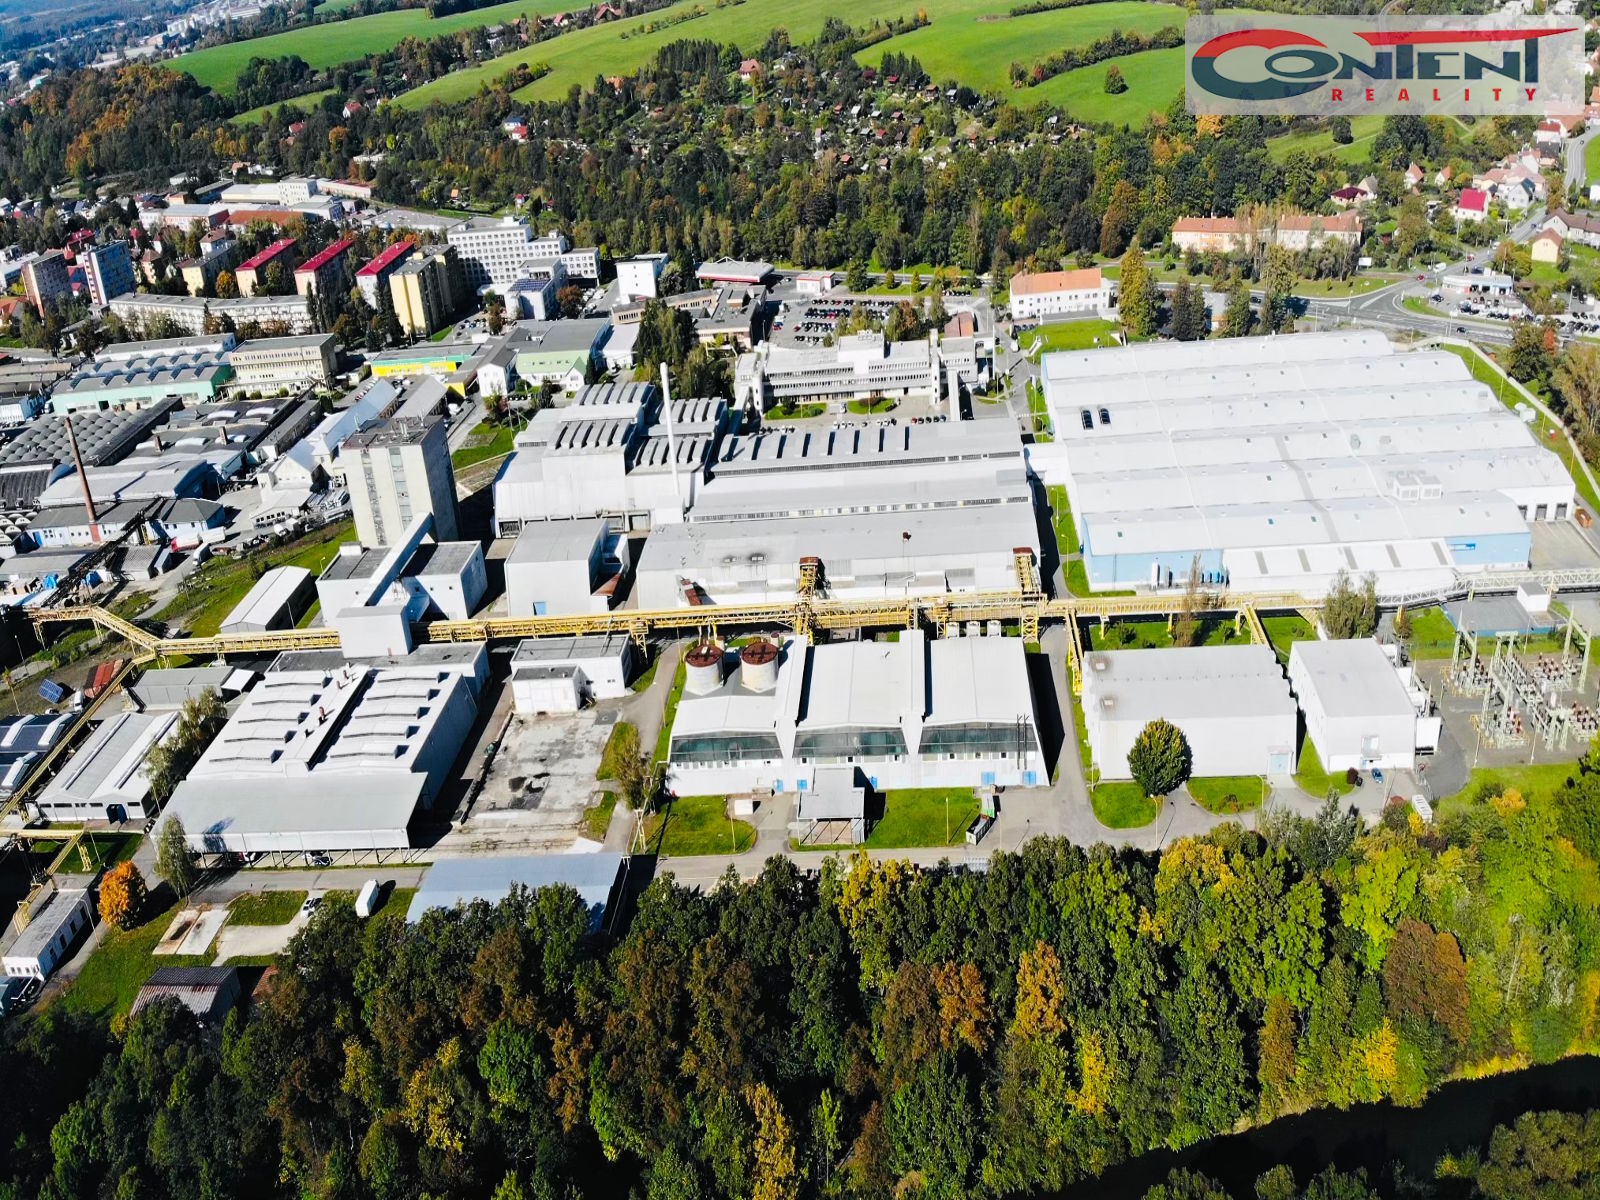 Pronájem skladu nebo výrobních prostor 4.000 m², Valašské Meziříčí